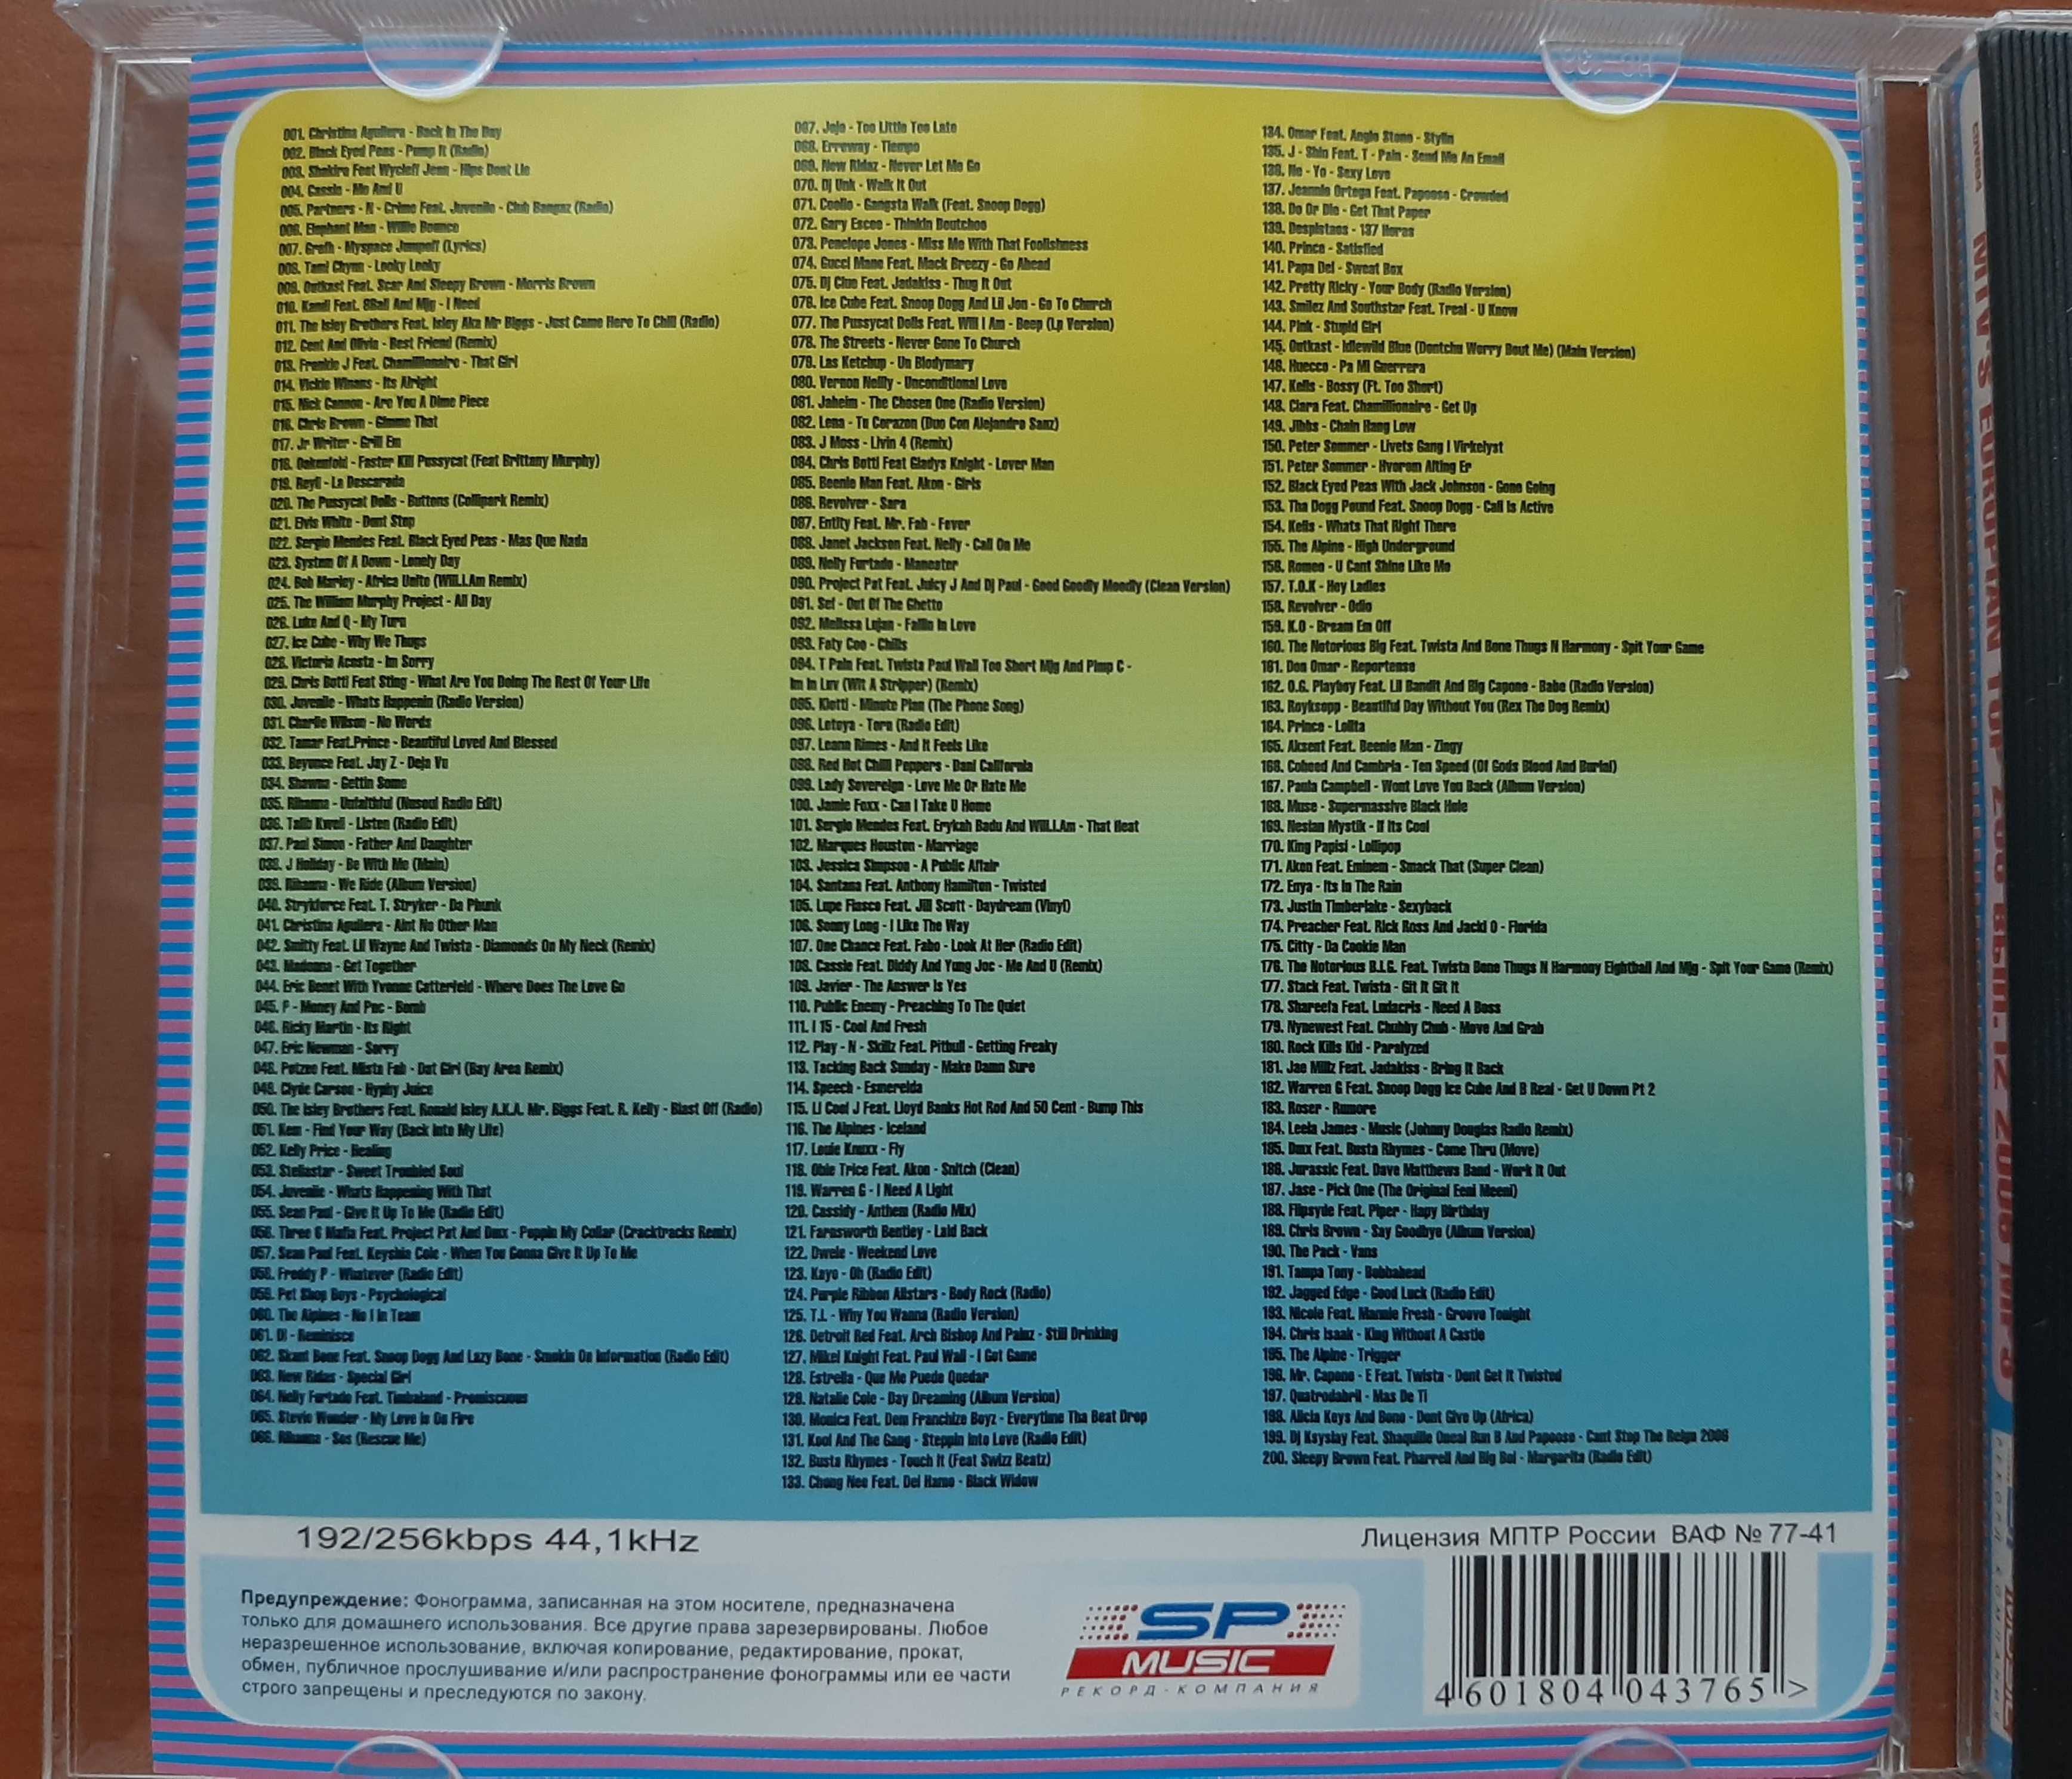 Музыкальные диски в формате МР3 (2)